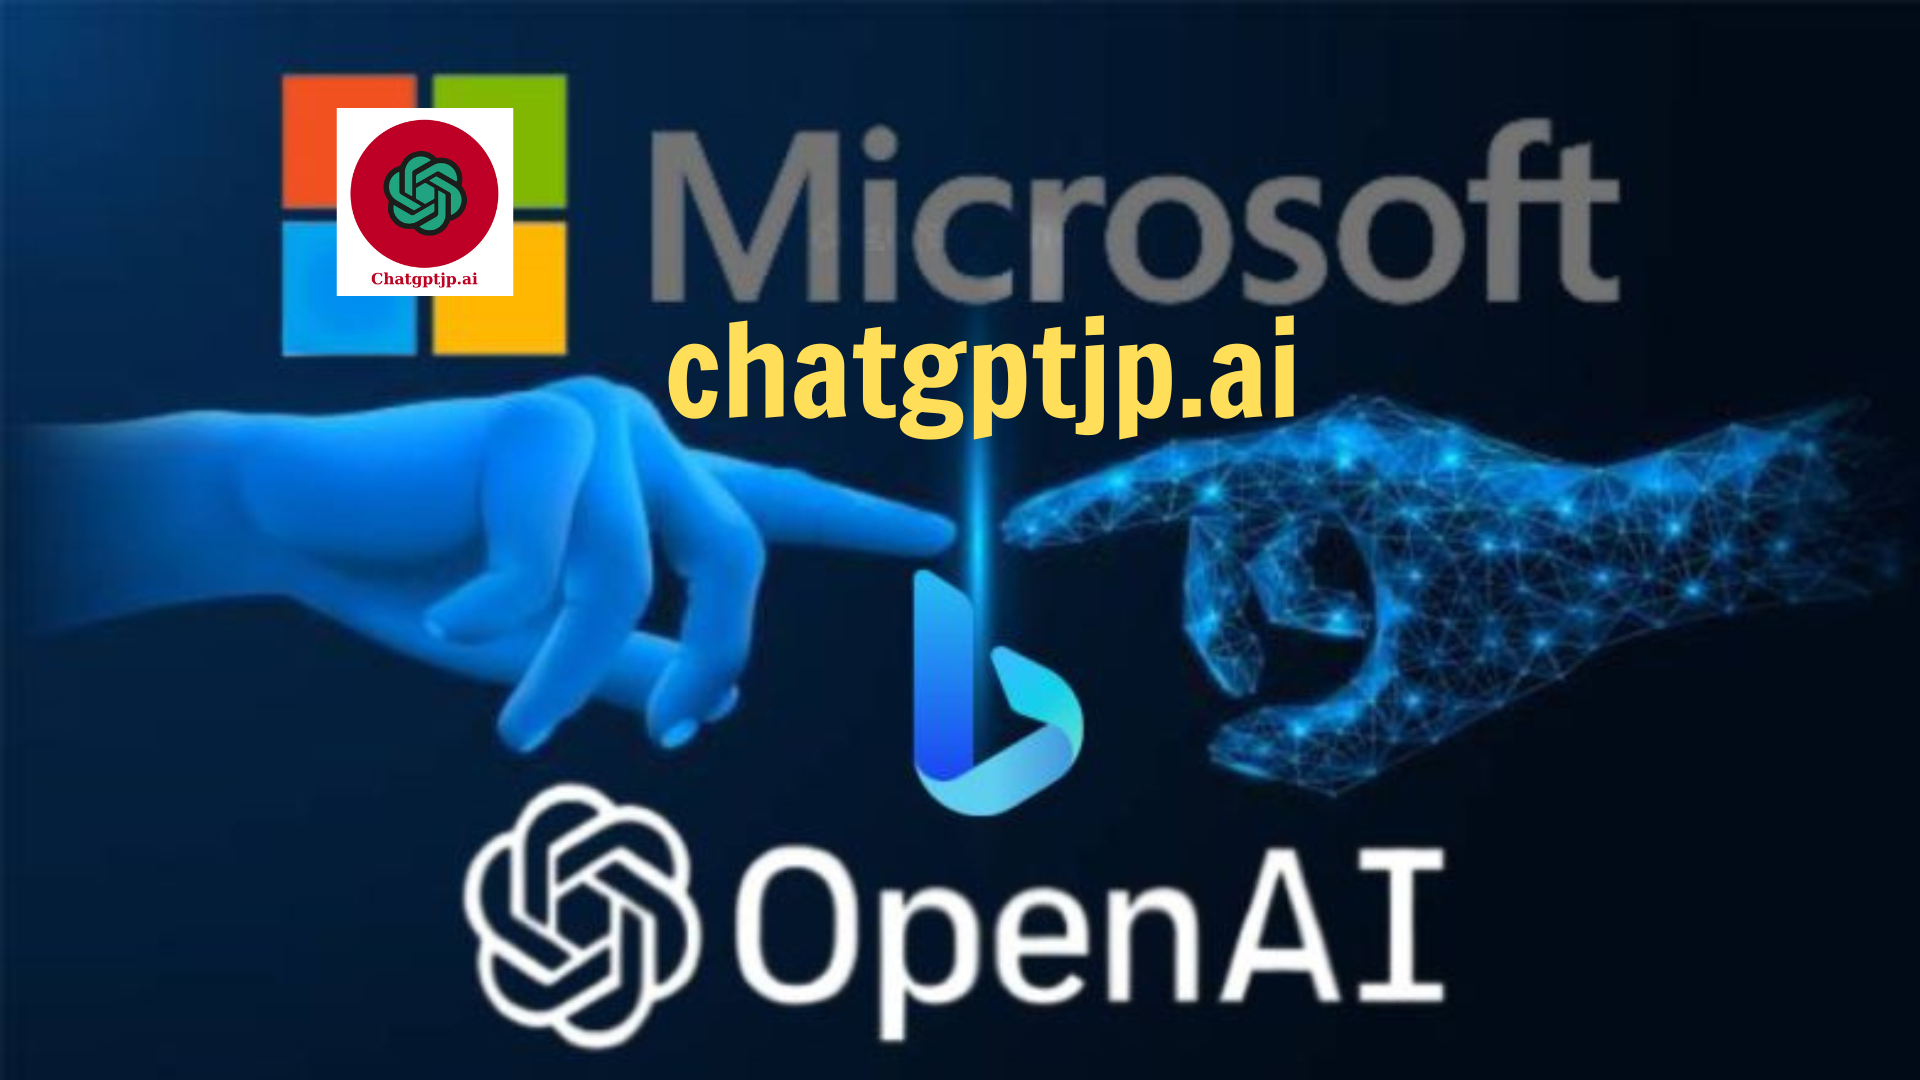 ChatGPT: Microsoftがチャットボットをクラウドに導入